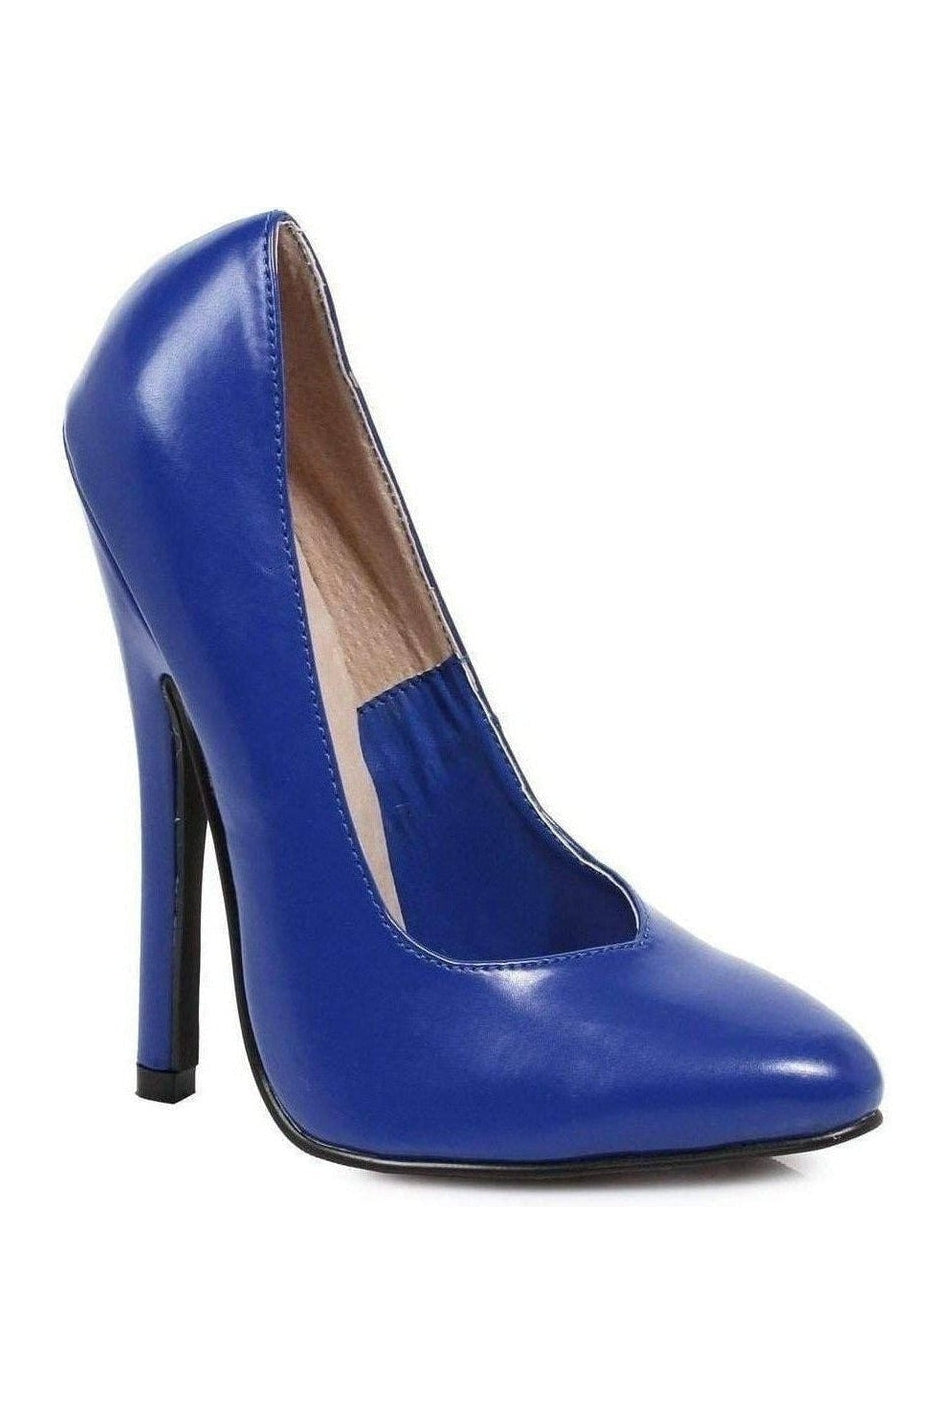 8260 Pump | Blue Patent-Pumps- Stripper Shoes at SEXYSHOES.COM